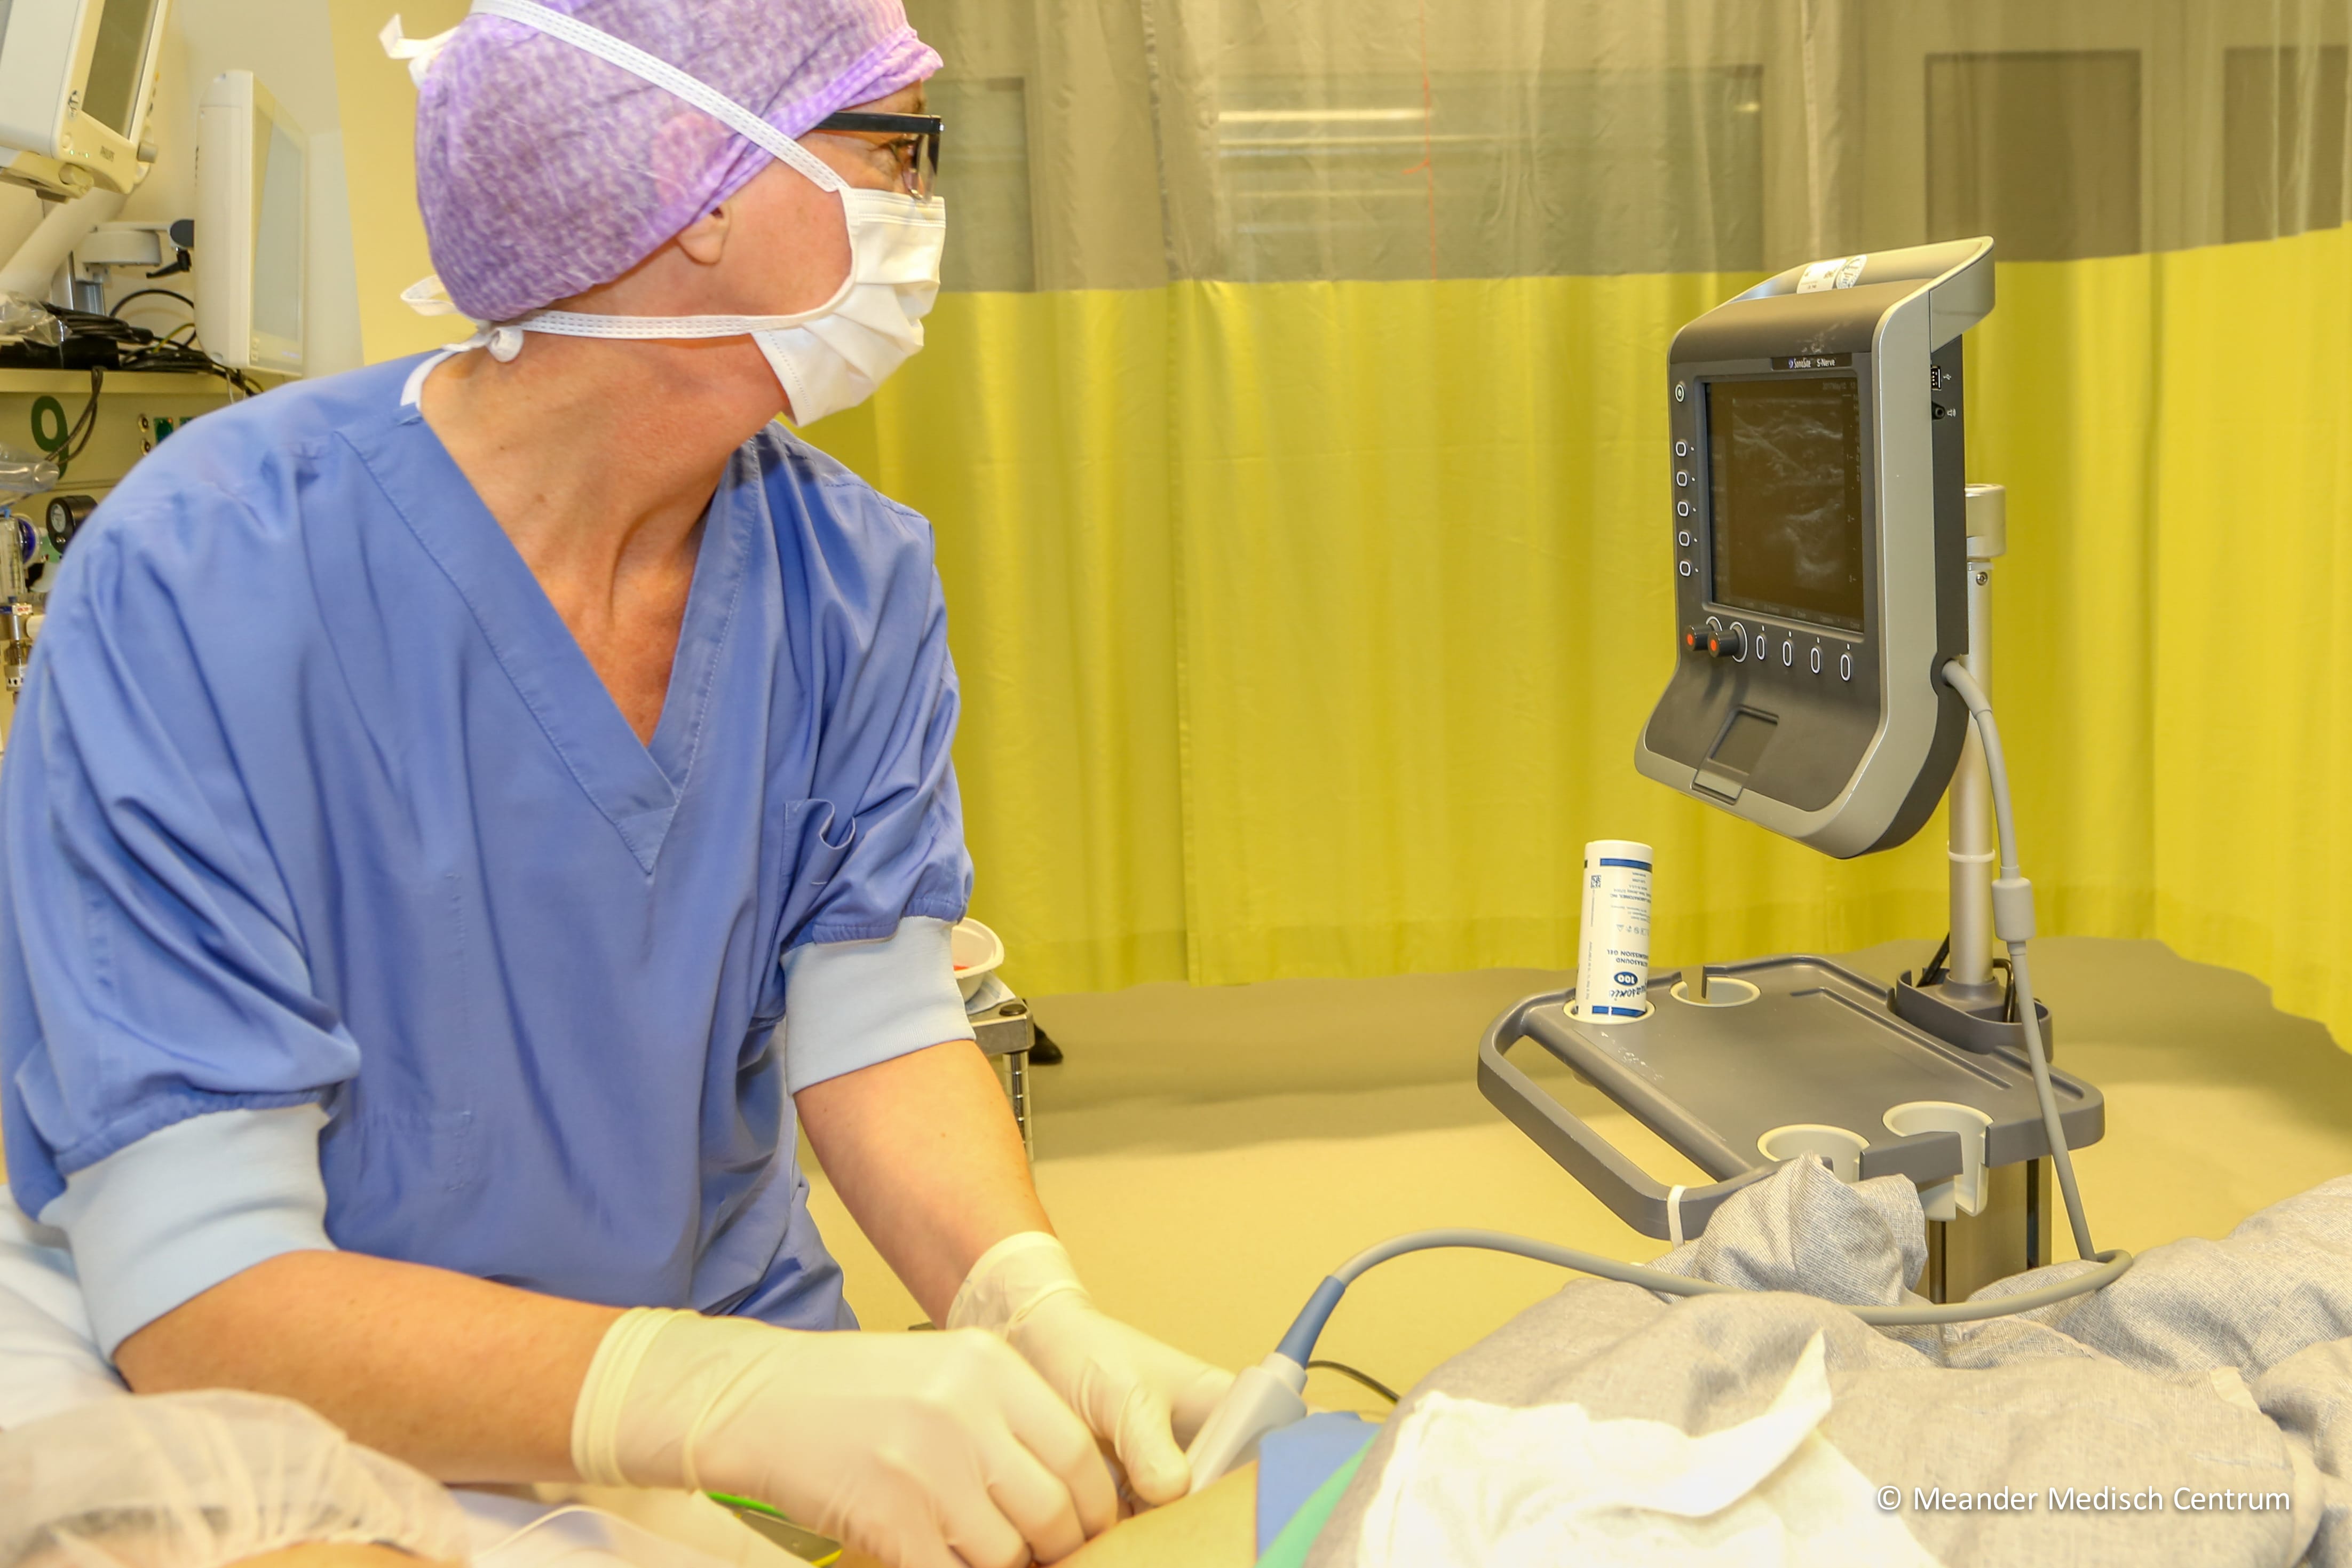 Foto: De anesthesioloog ziet op het echoscherm hoe de verdoving van het borstgebied precies op de juiste plek komt. Fotograaf: Frank Noordanus, Meander Medisch Centrum